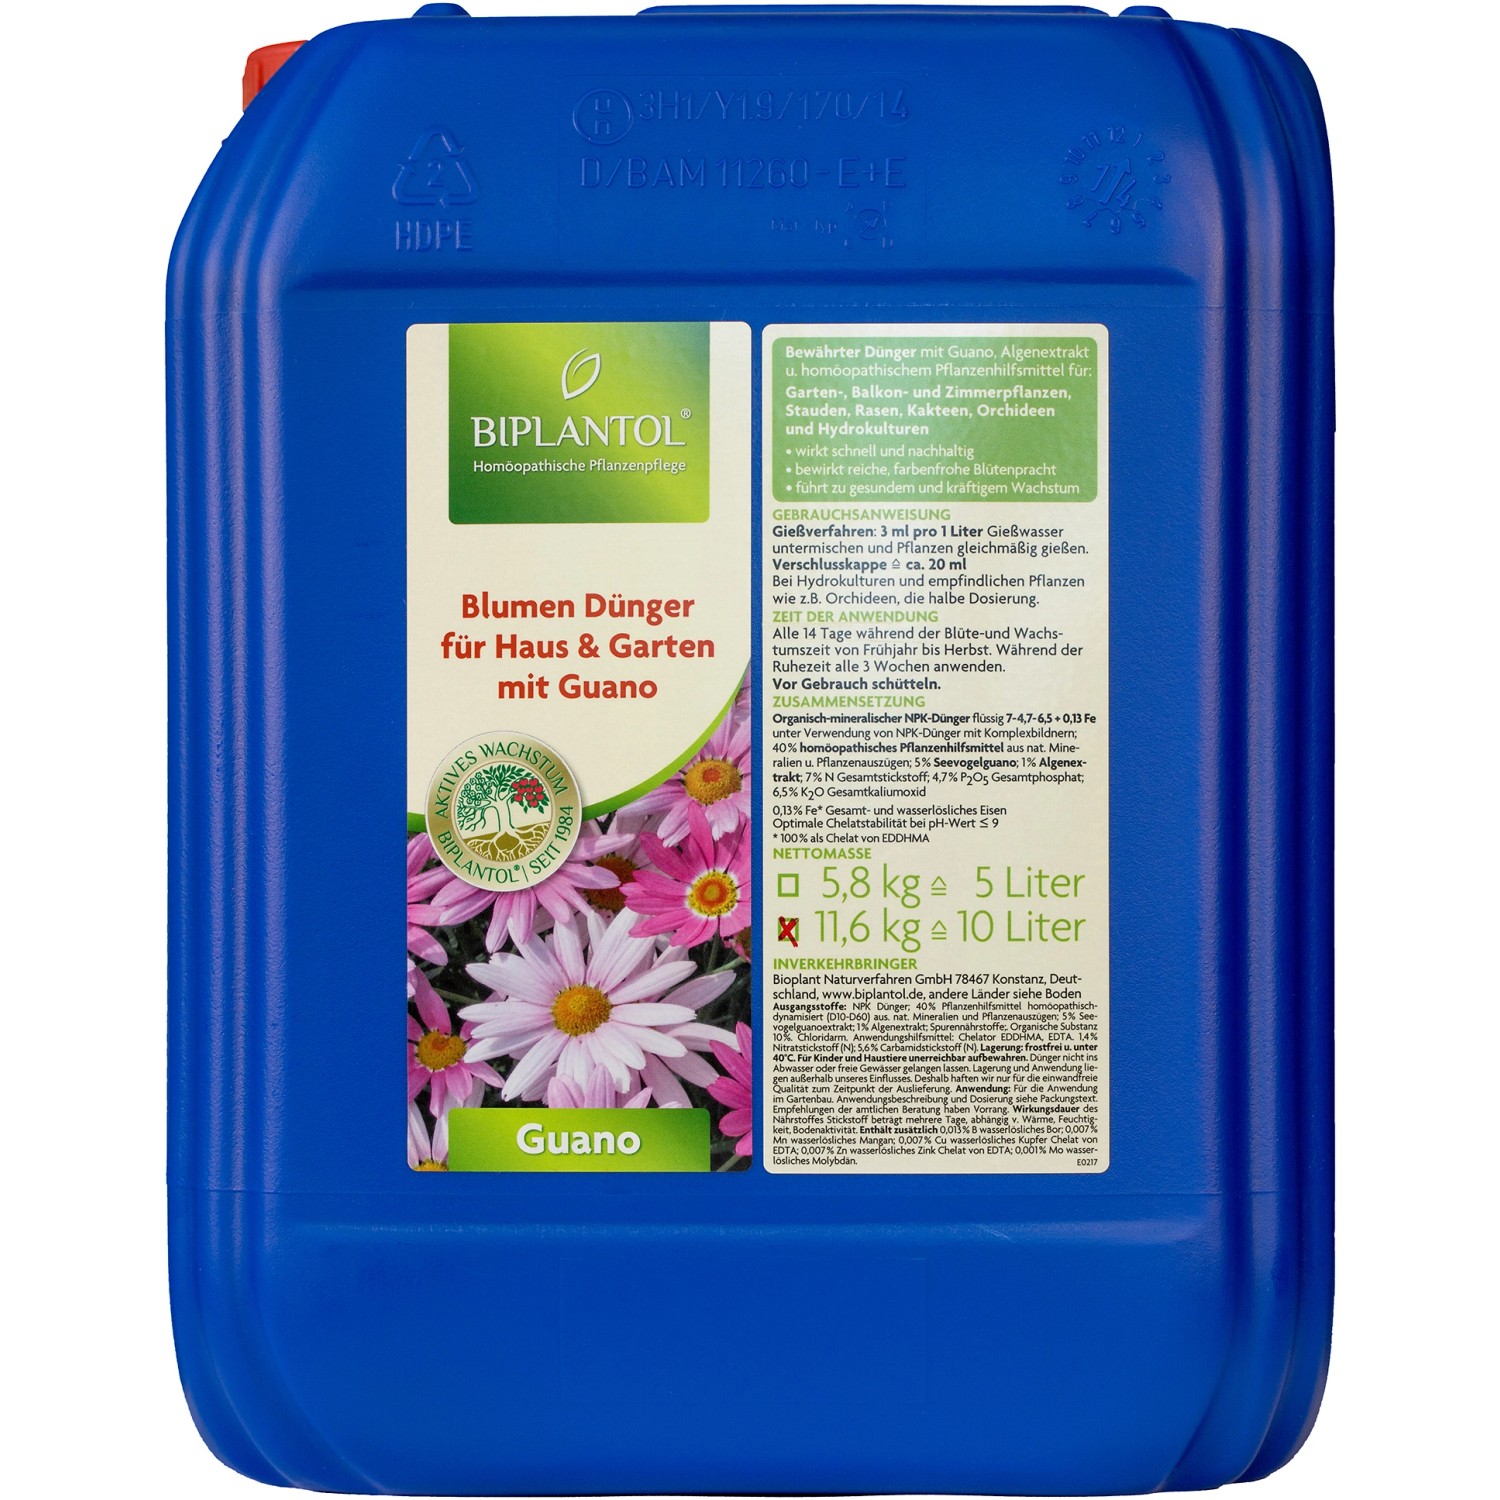 Biplantol Zierpflanzen- und Blumendünger Guano 10 l von Biplantol